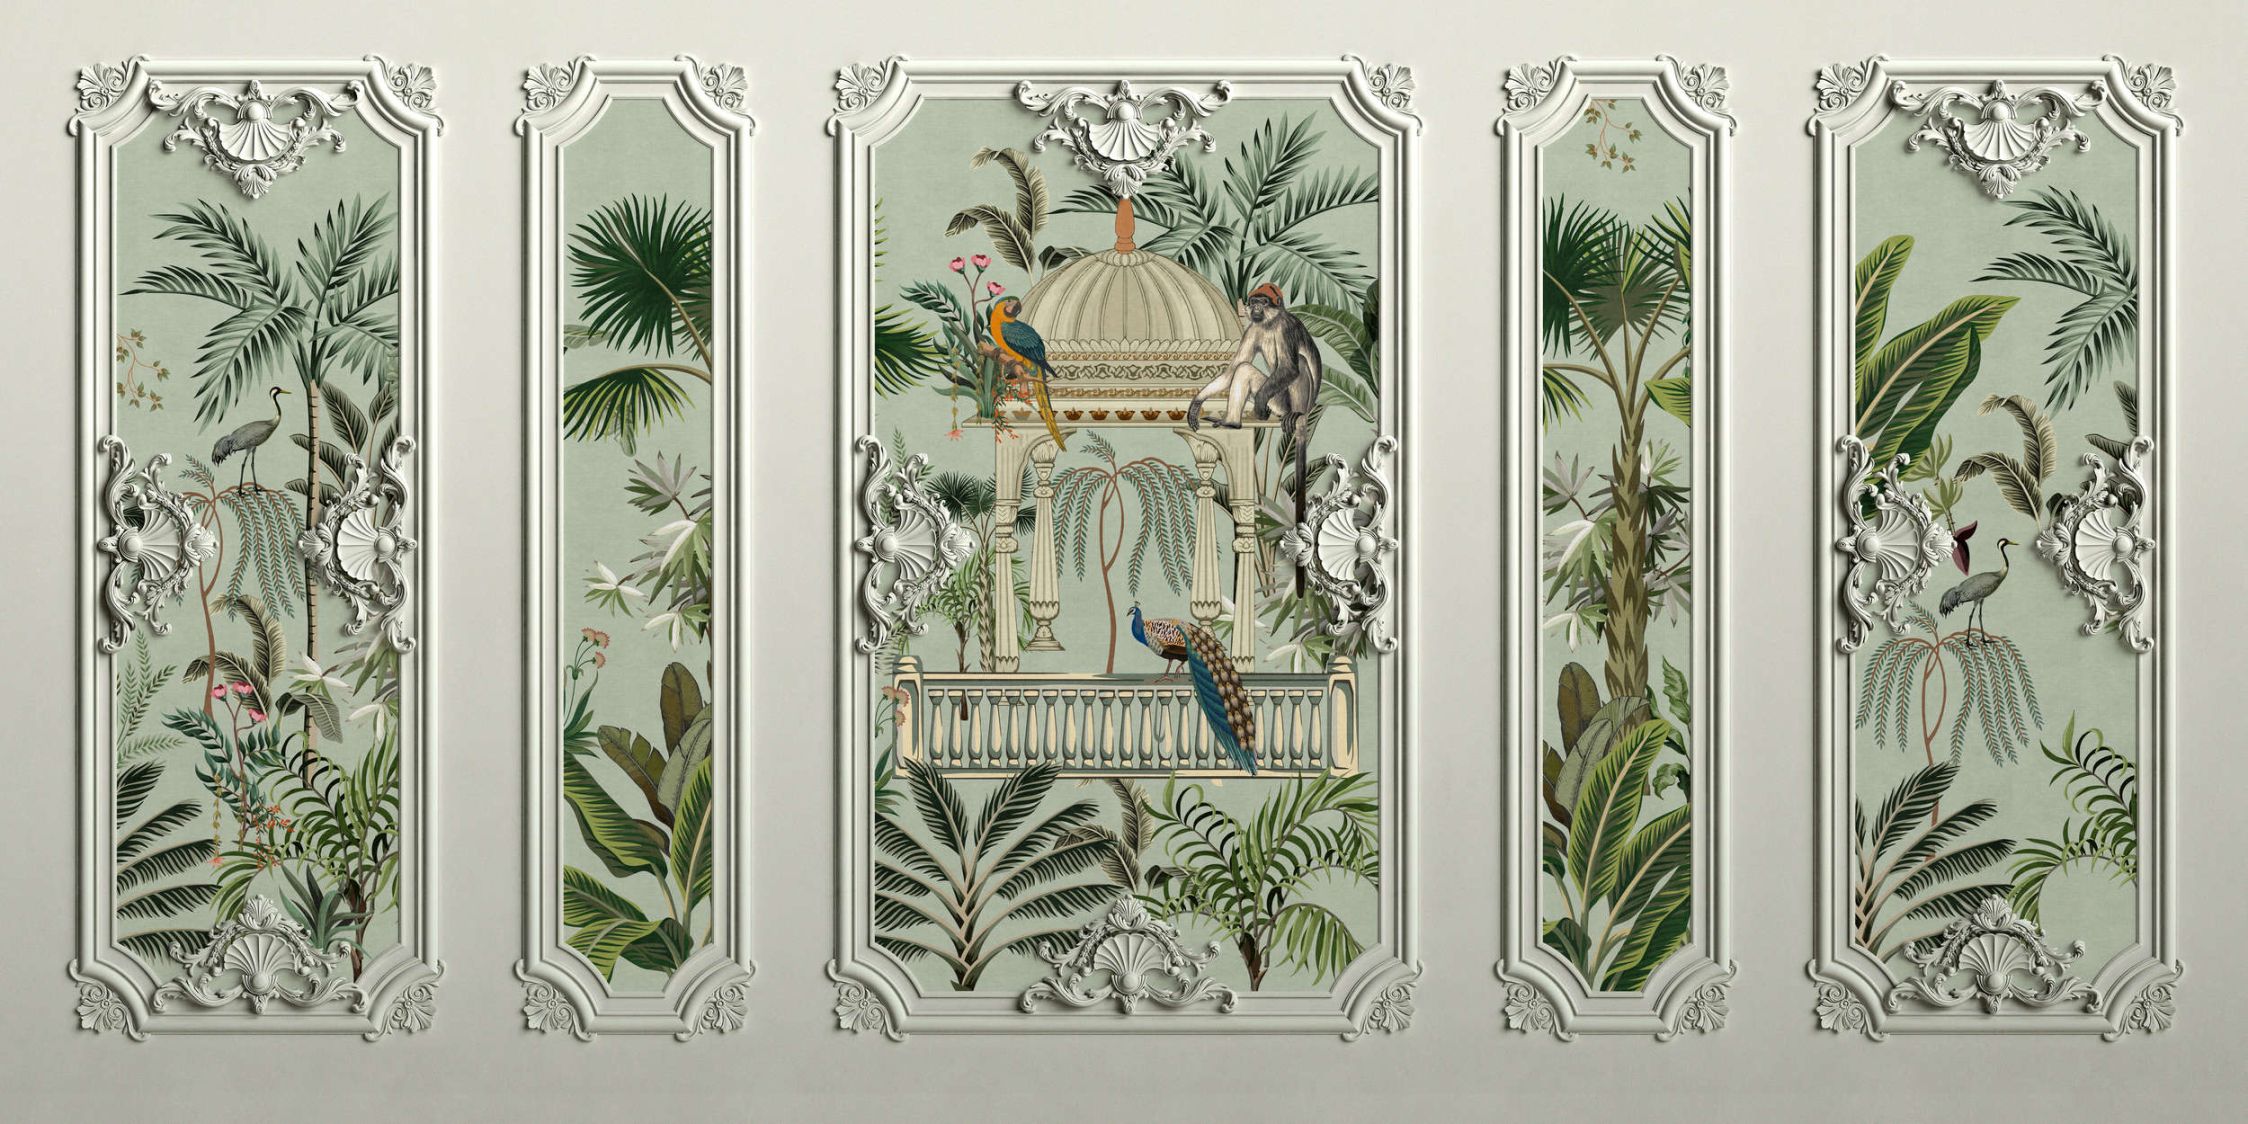             papier peint en papier panoramique »darjeeling« - aspect cadre stucco avec oiseaux & palmiers avec structure en lin en arrière-plan - intissé premium lisse et légèrement brillant
        